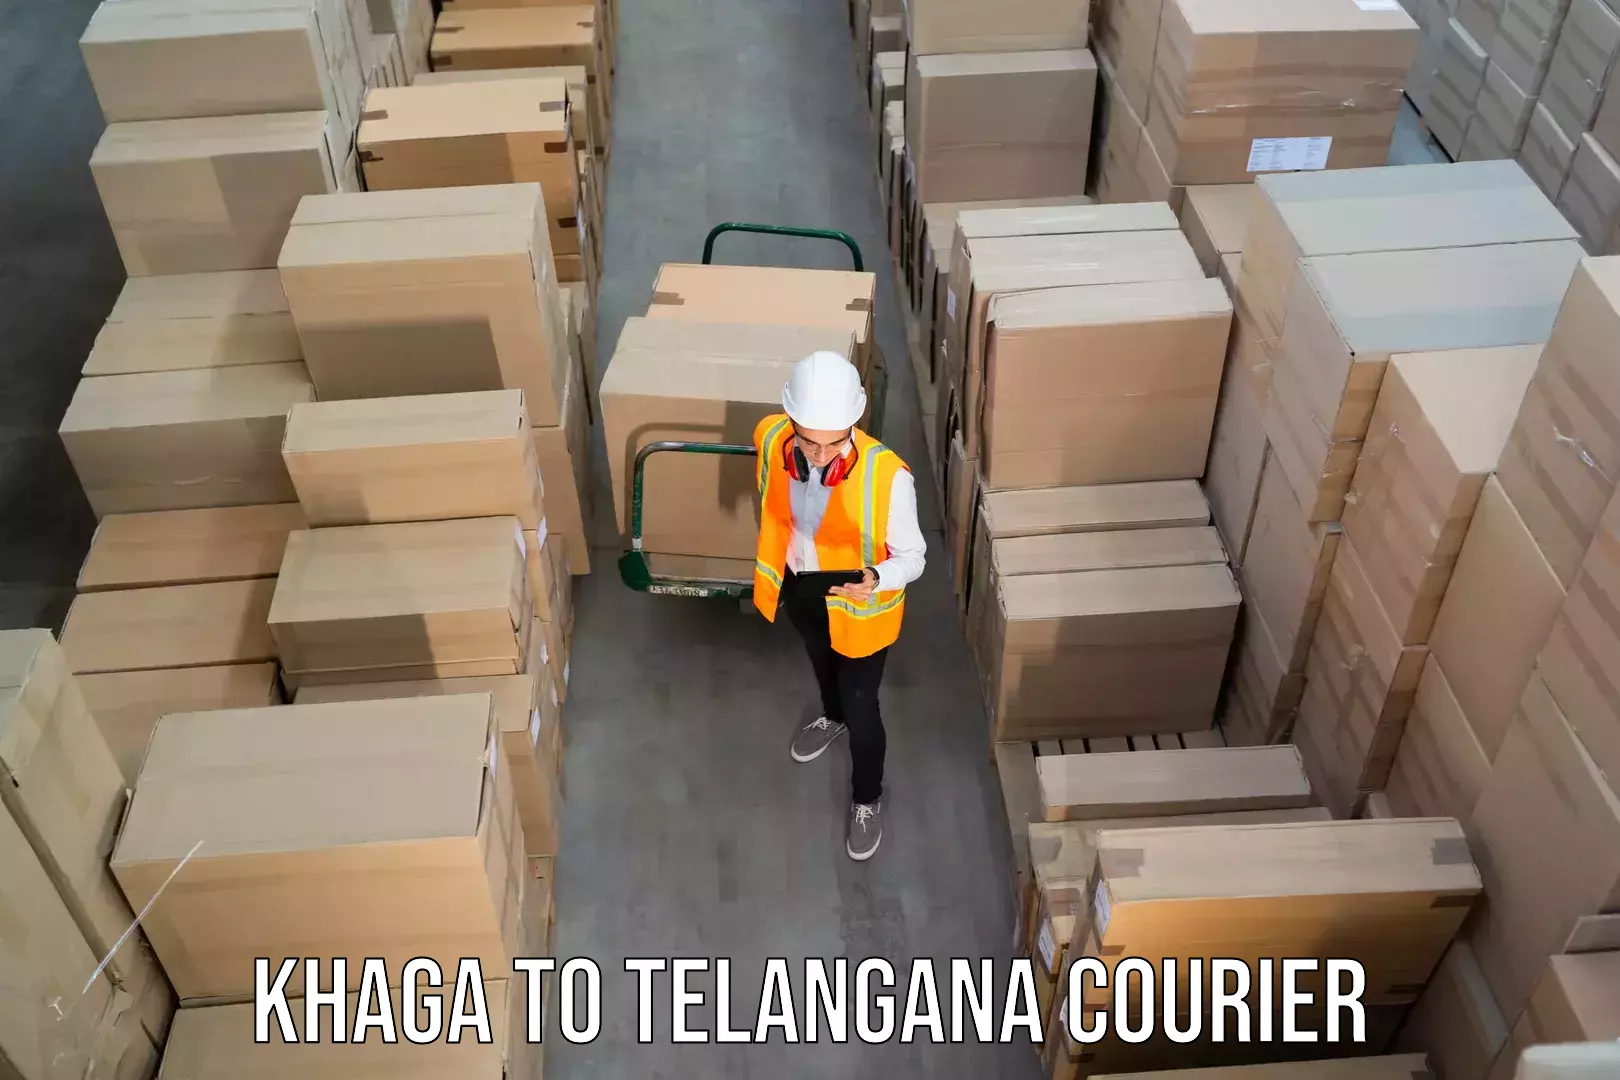 Courier service booking Khaga to Bhainsa